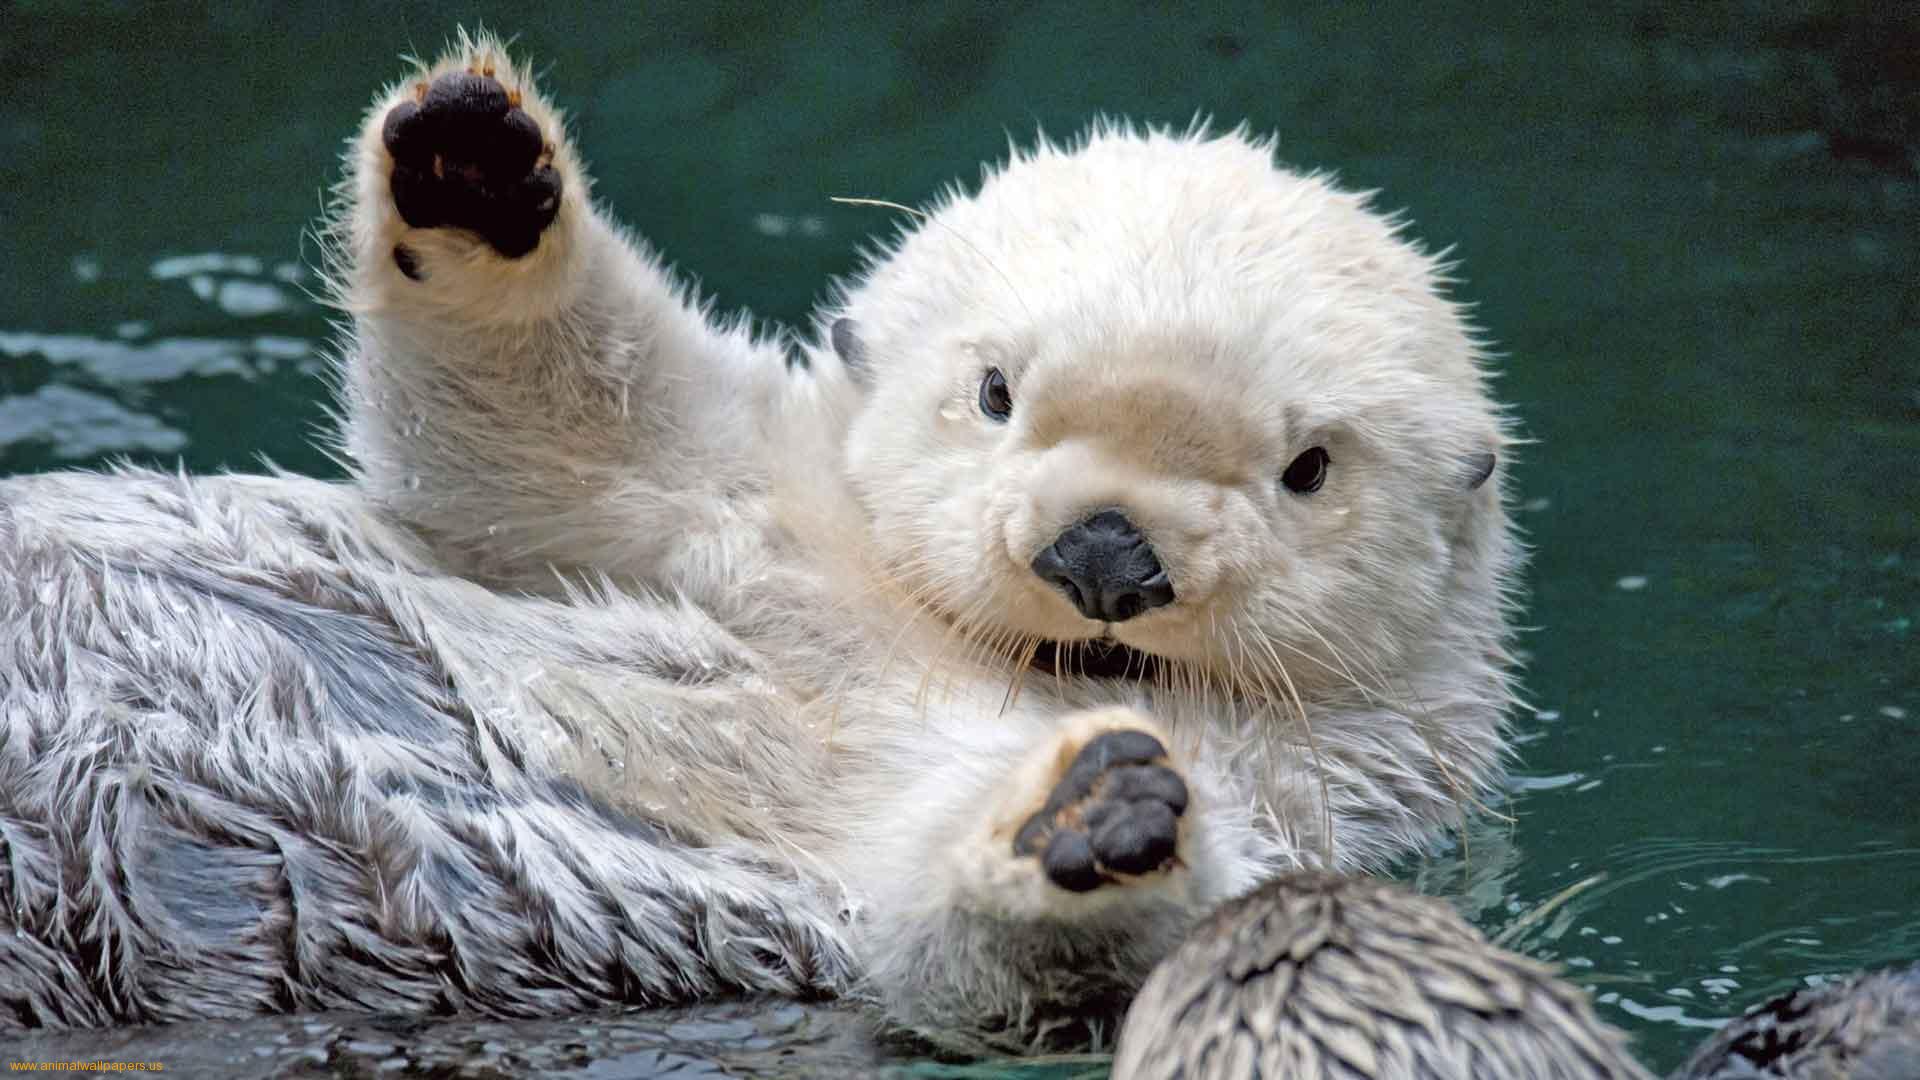 Image: large otter